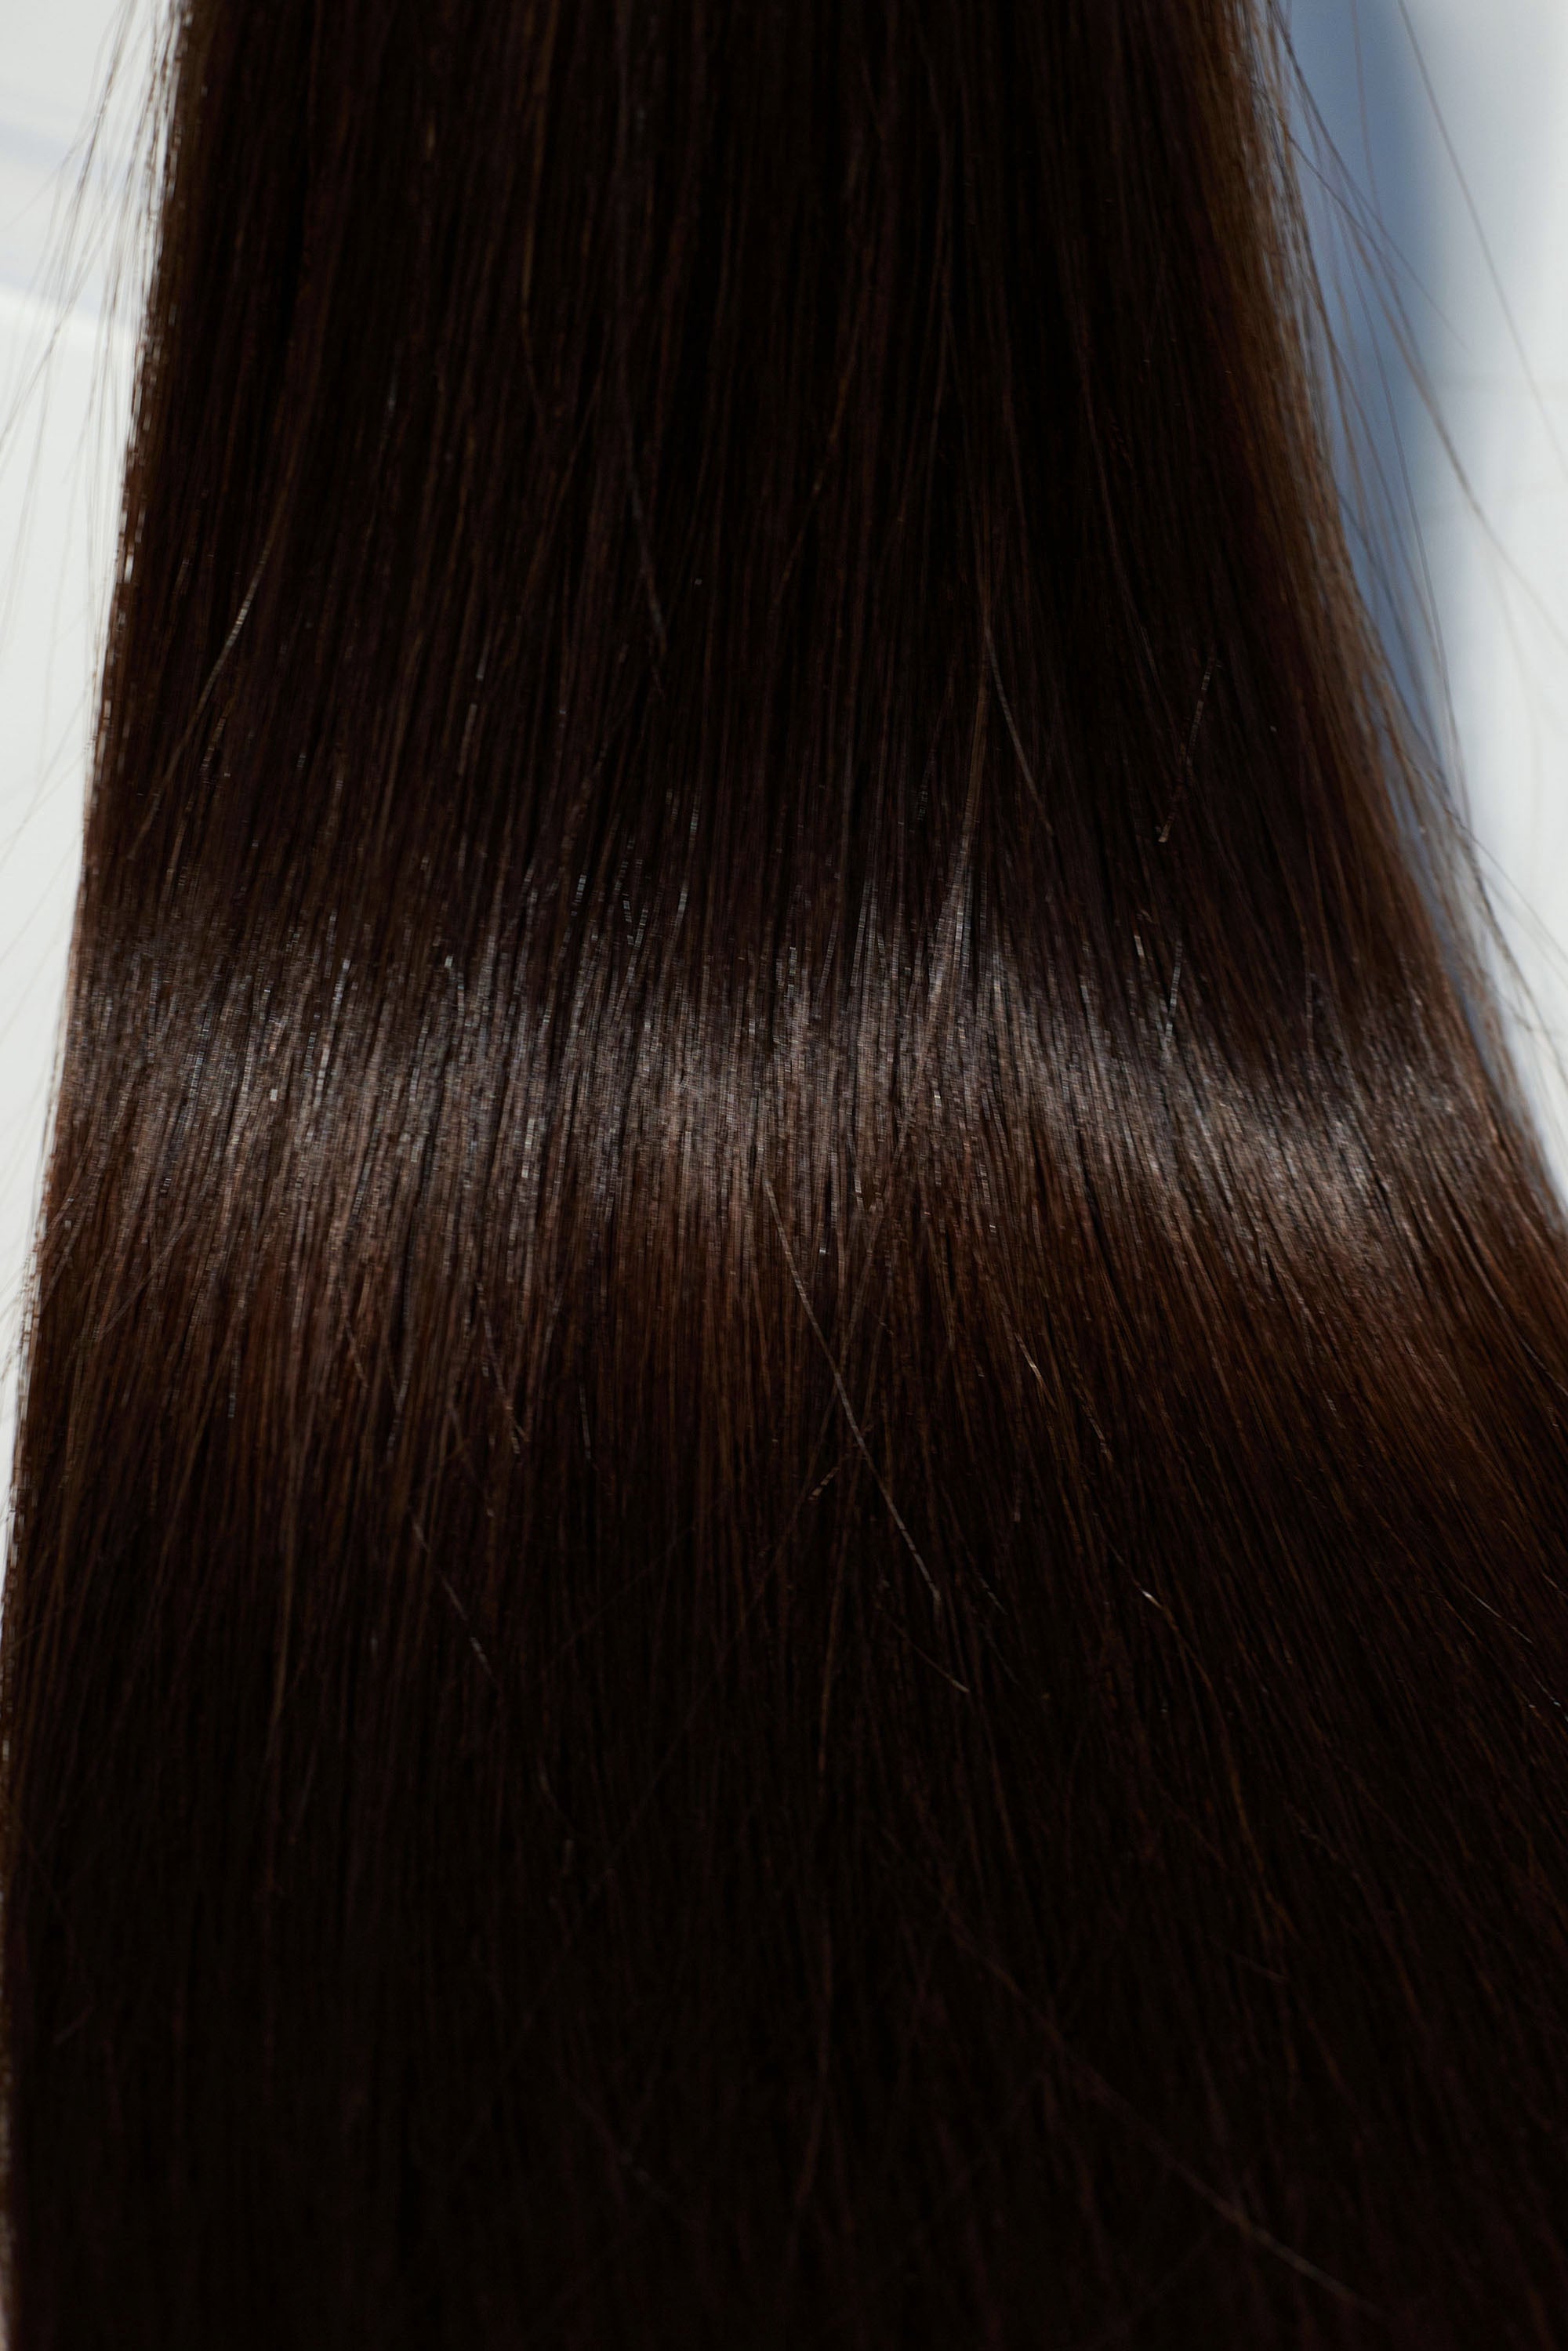 Behair professional Bulk hair "Premium" 18" (45cm) Natural Straight Dark Coffee Brown #2 - 25g hair extensions